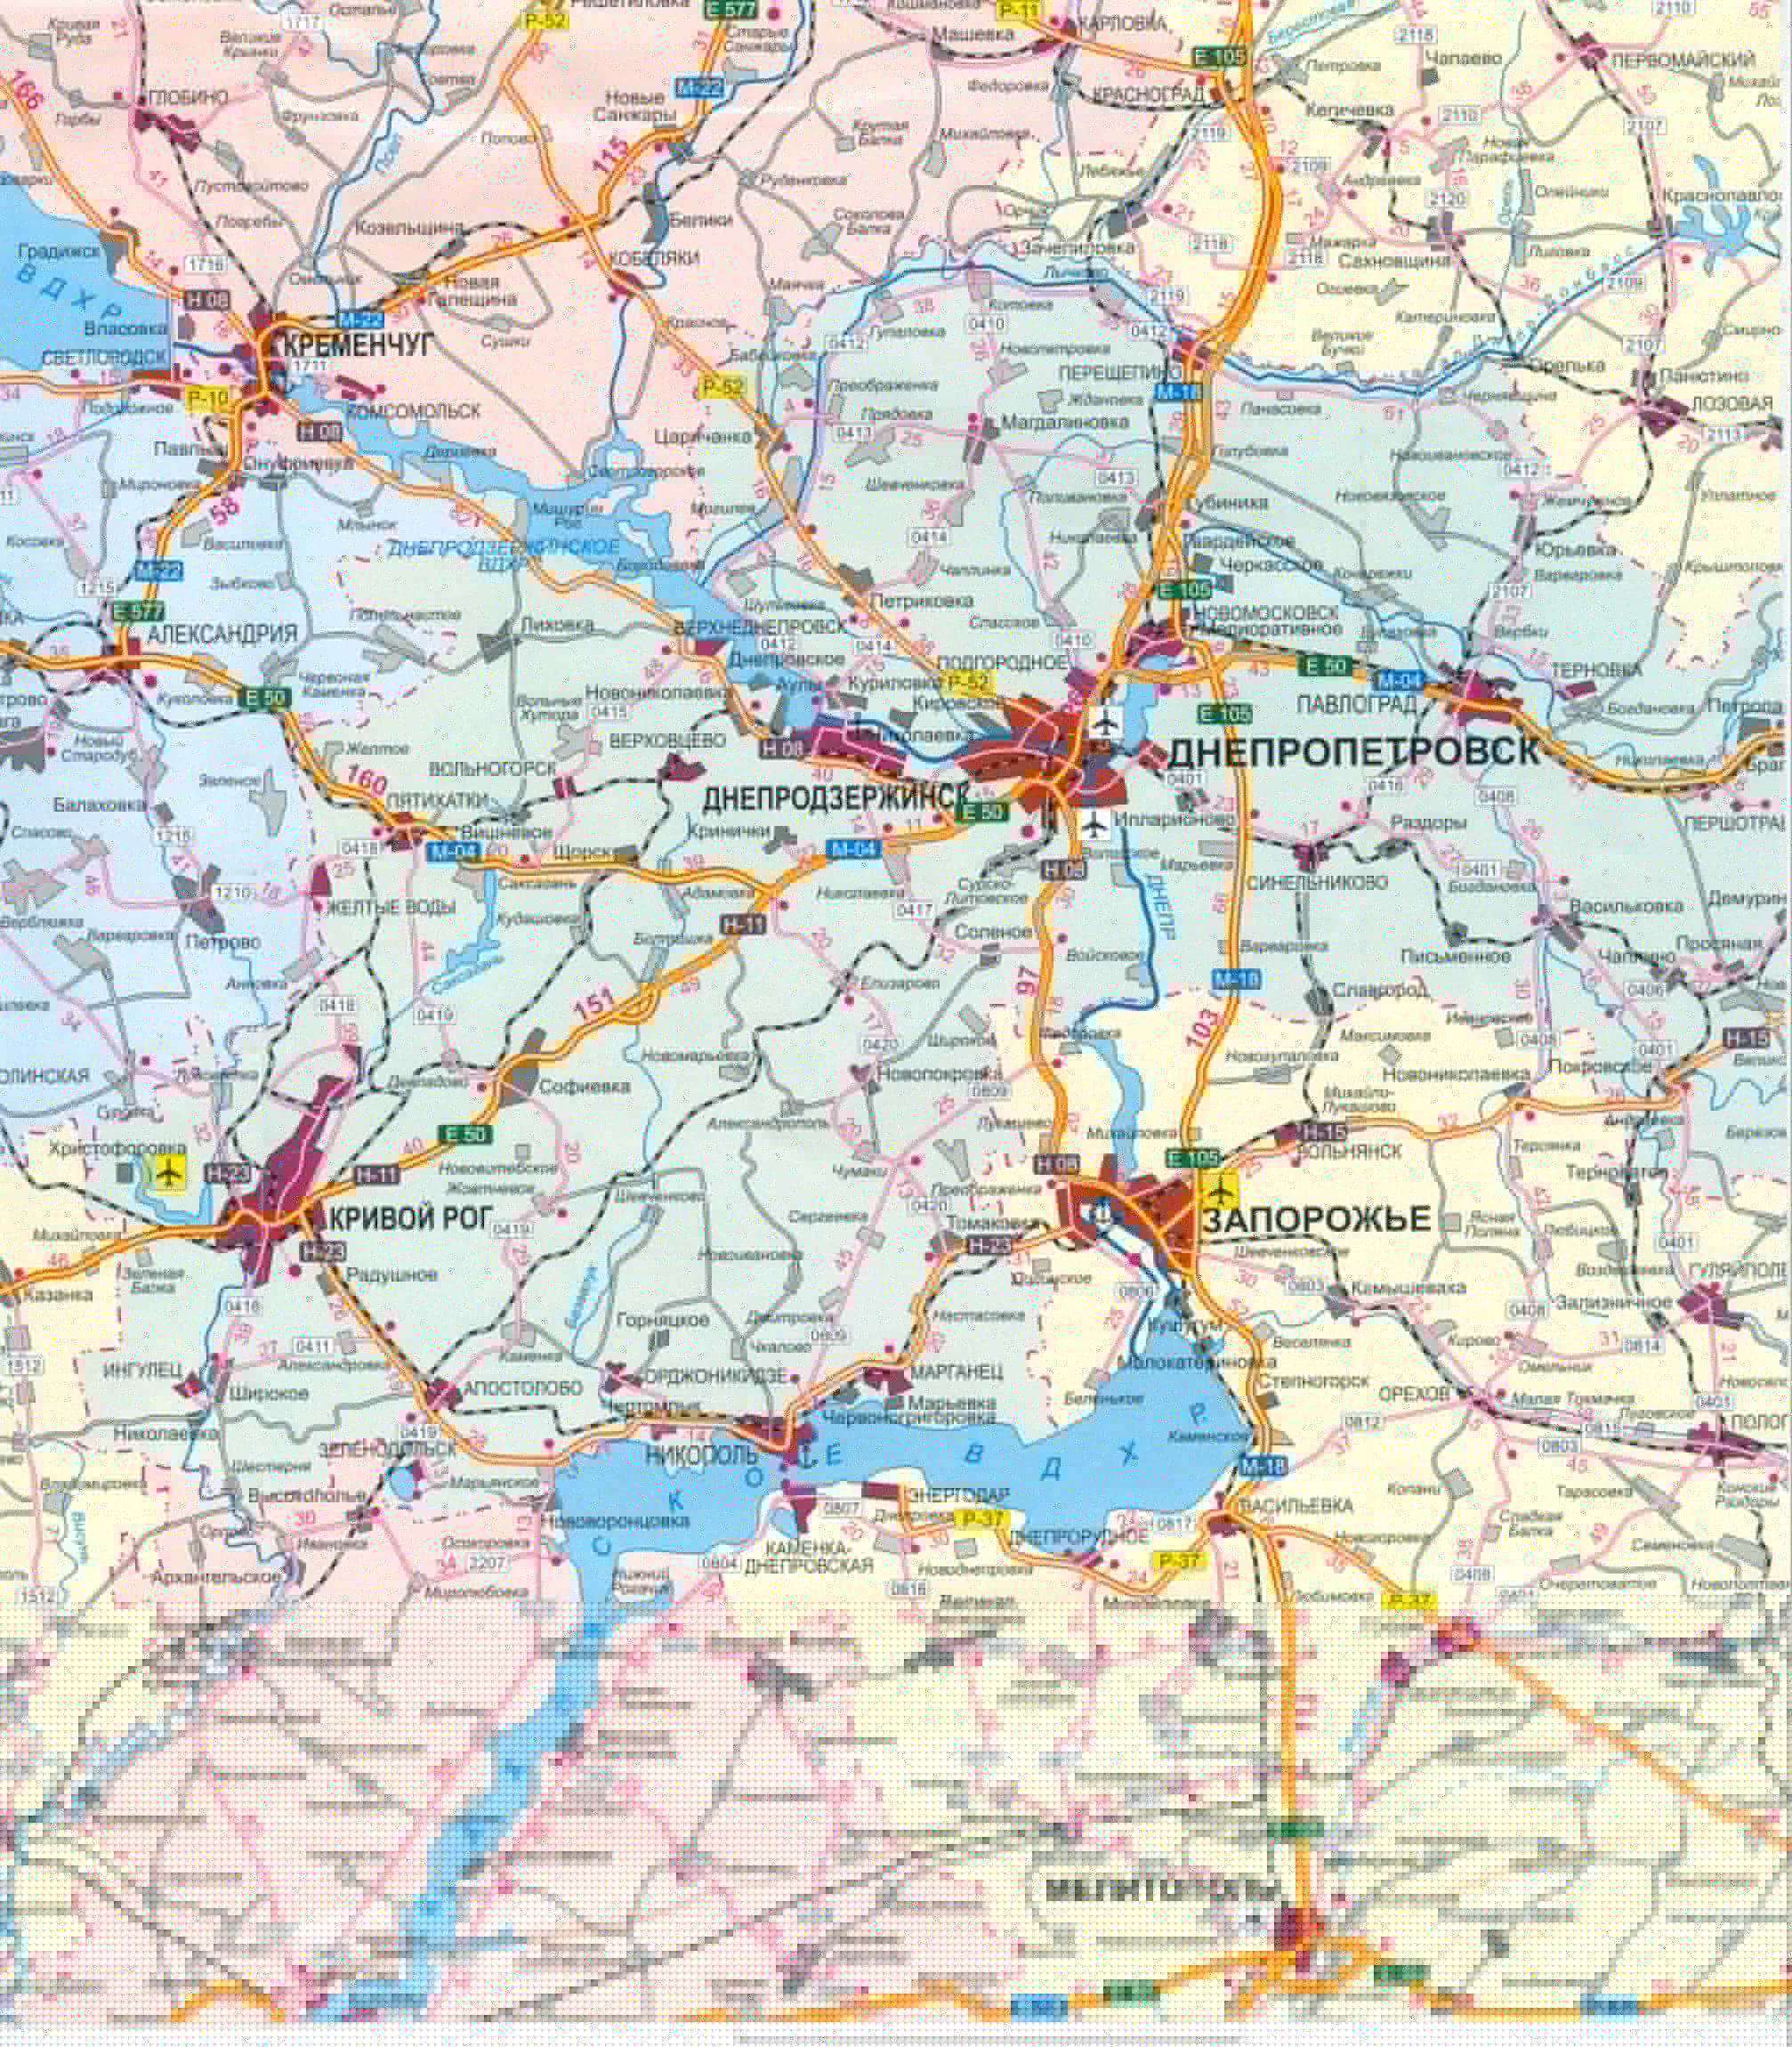 Карта Украины бесплатно. Карта дорог Украины скачать бесплатно. Большая карта дорог Украины бесплатно, D1